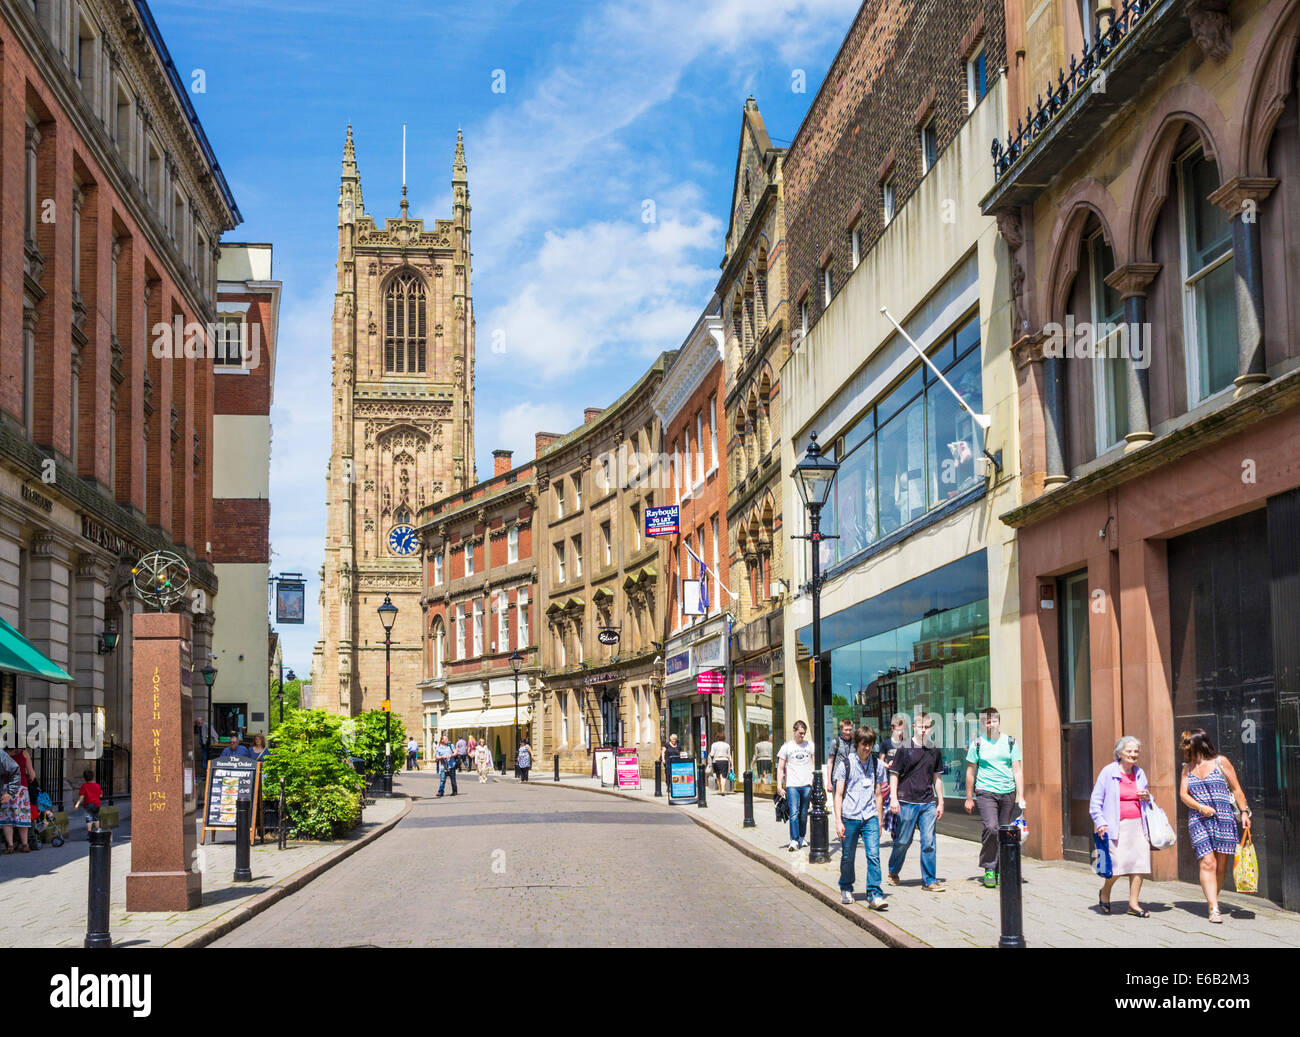 Irongate boutiques le centre-ville de Derby à la recherche vers la cathédrale Derby Derbyshire, Angleterre Royaume-uni GB EU Europe Banque D'Images